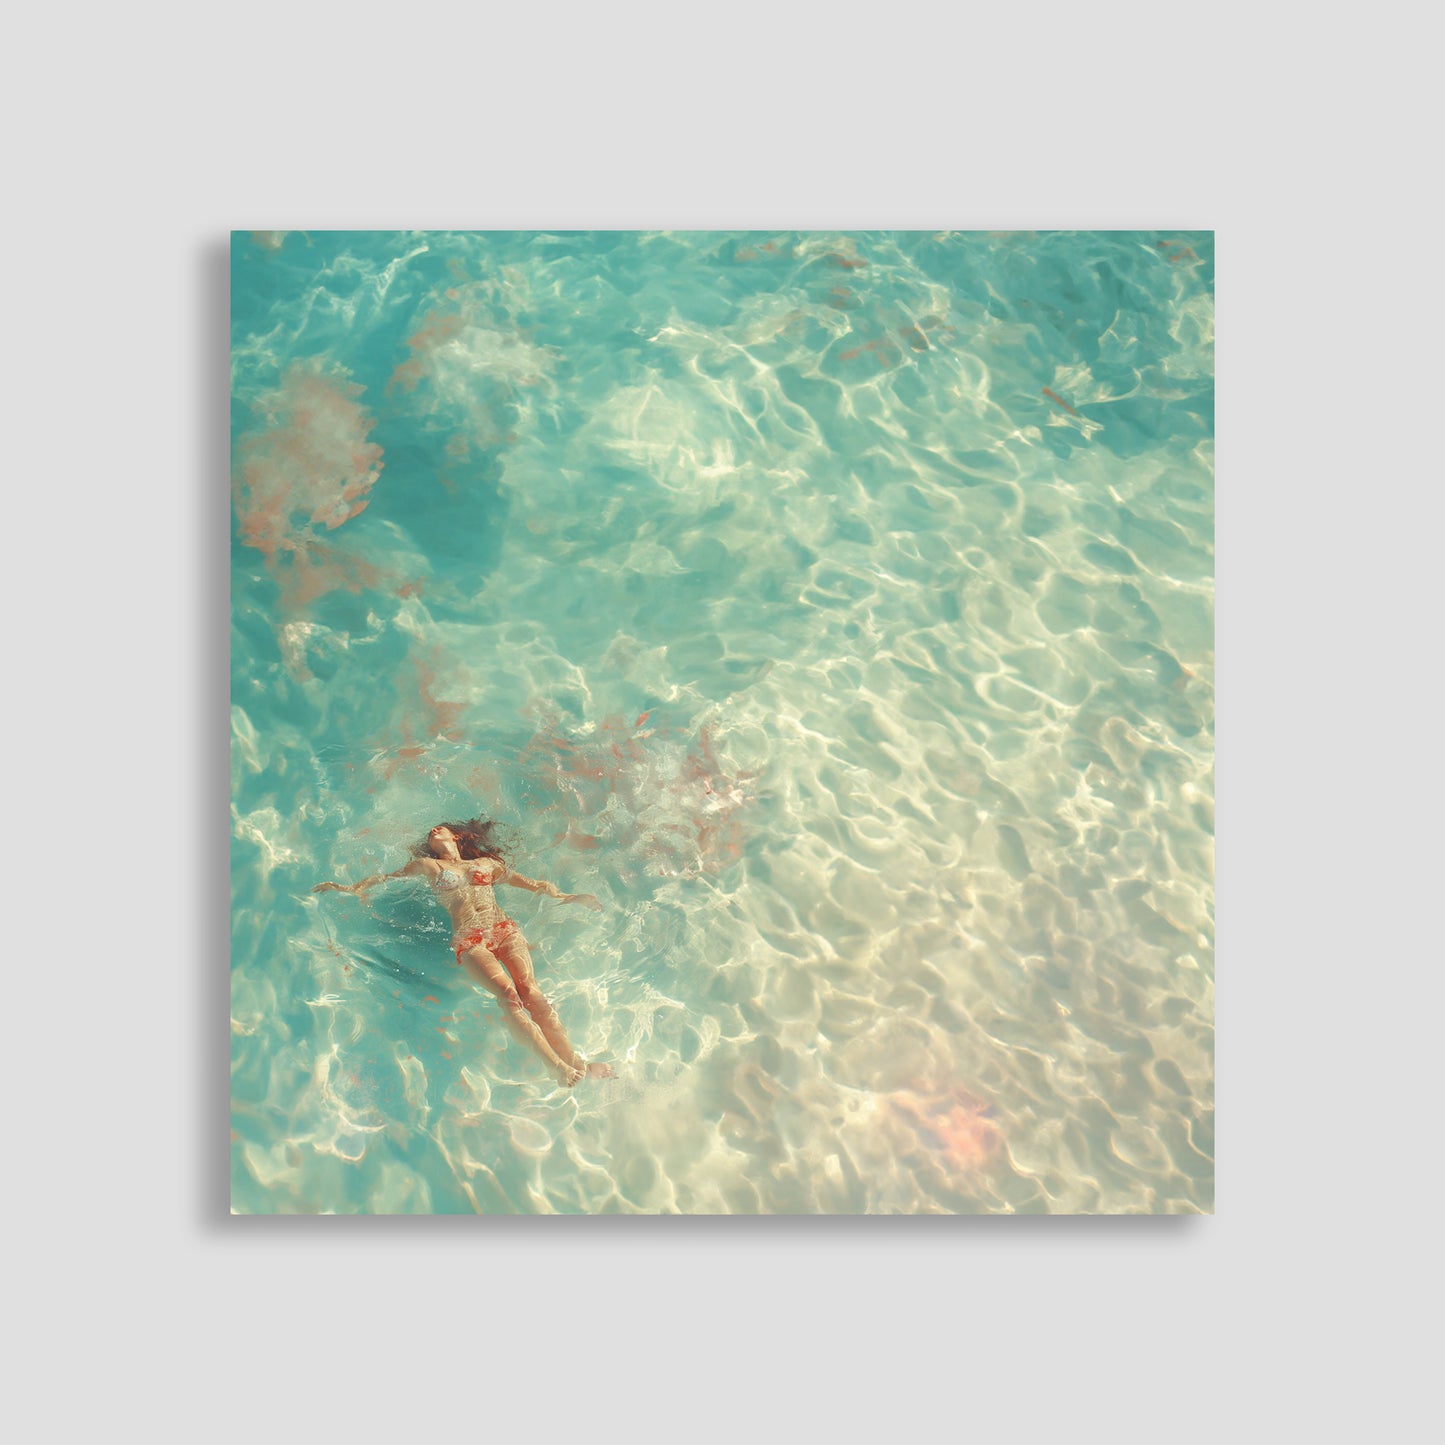 Mujer flotando en aguas cristalinas y turquesas, vista aérea